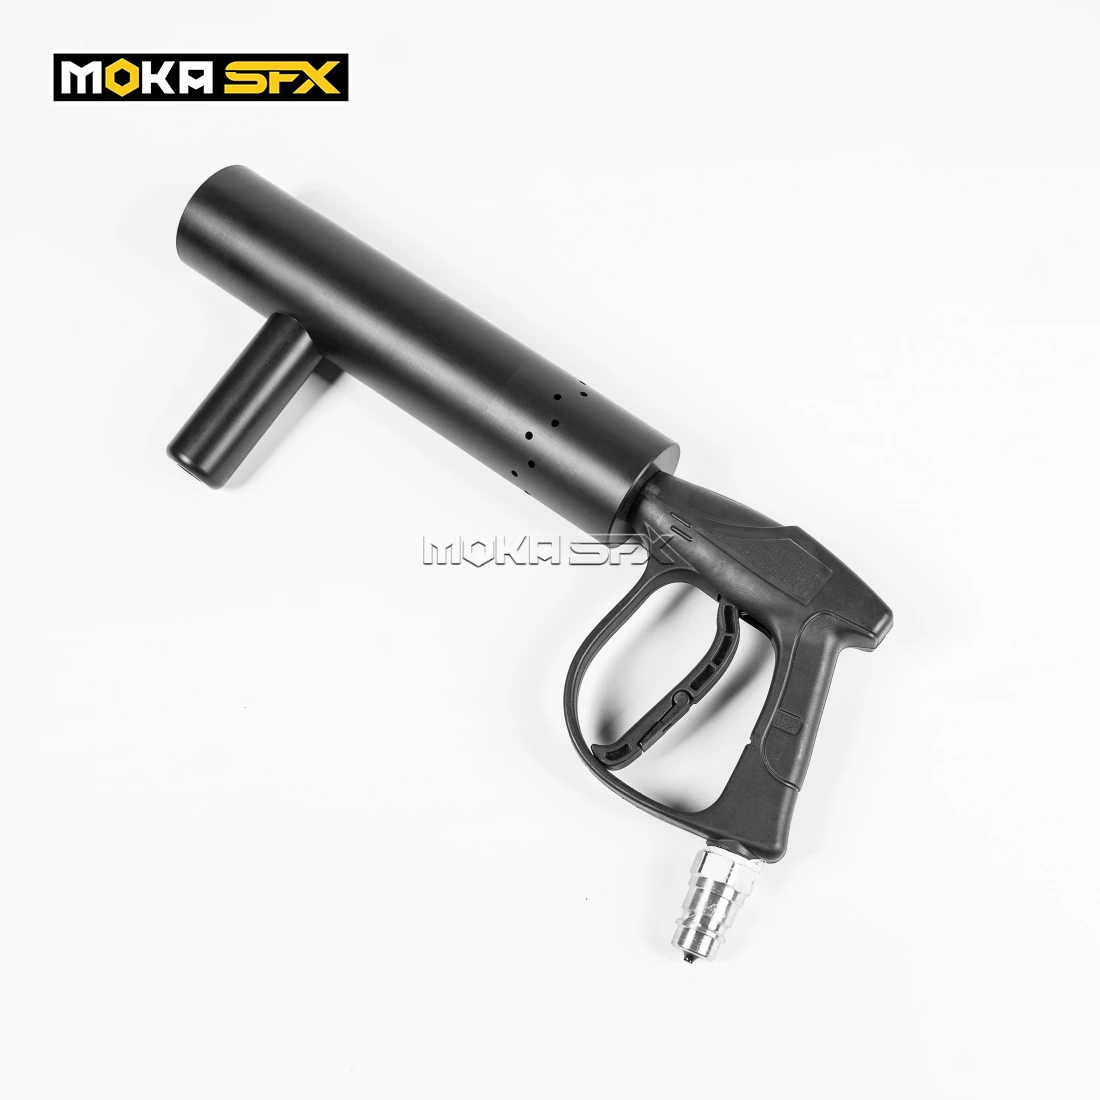 MOKA-pistola de chorro de Co2 SFX para escenario, Máquina manual con efecto...